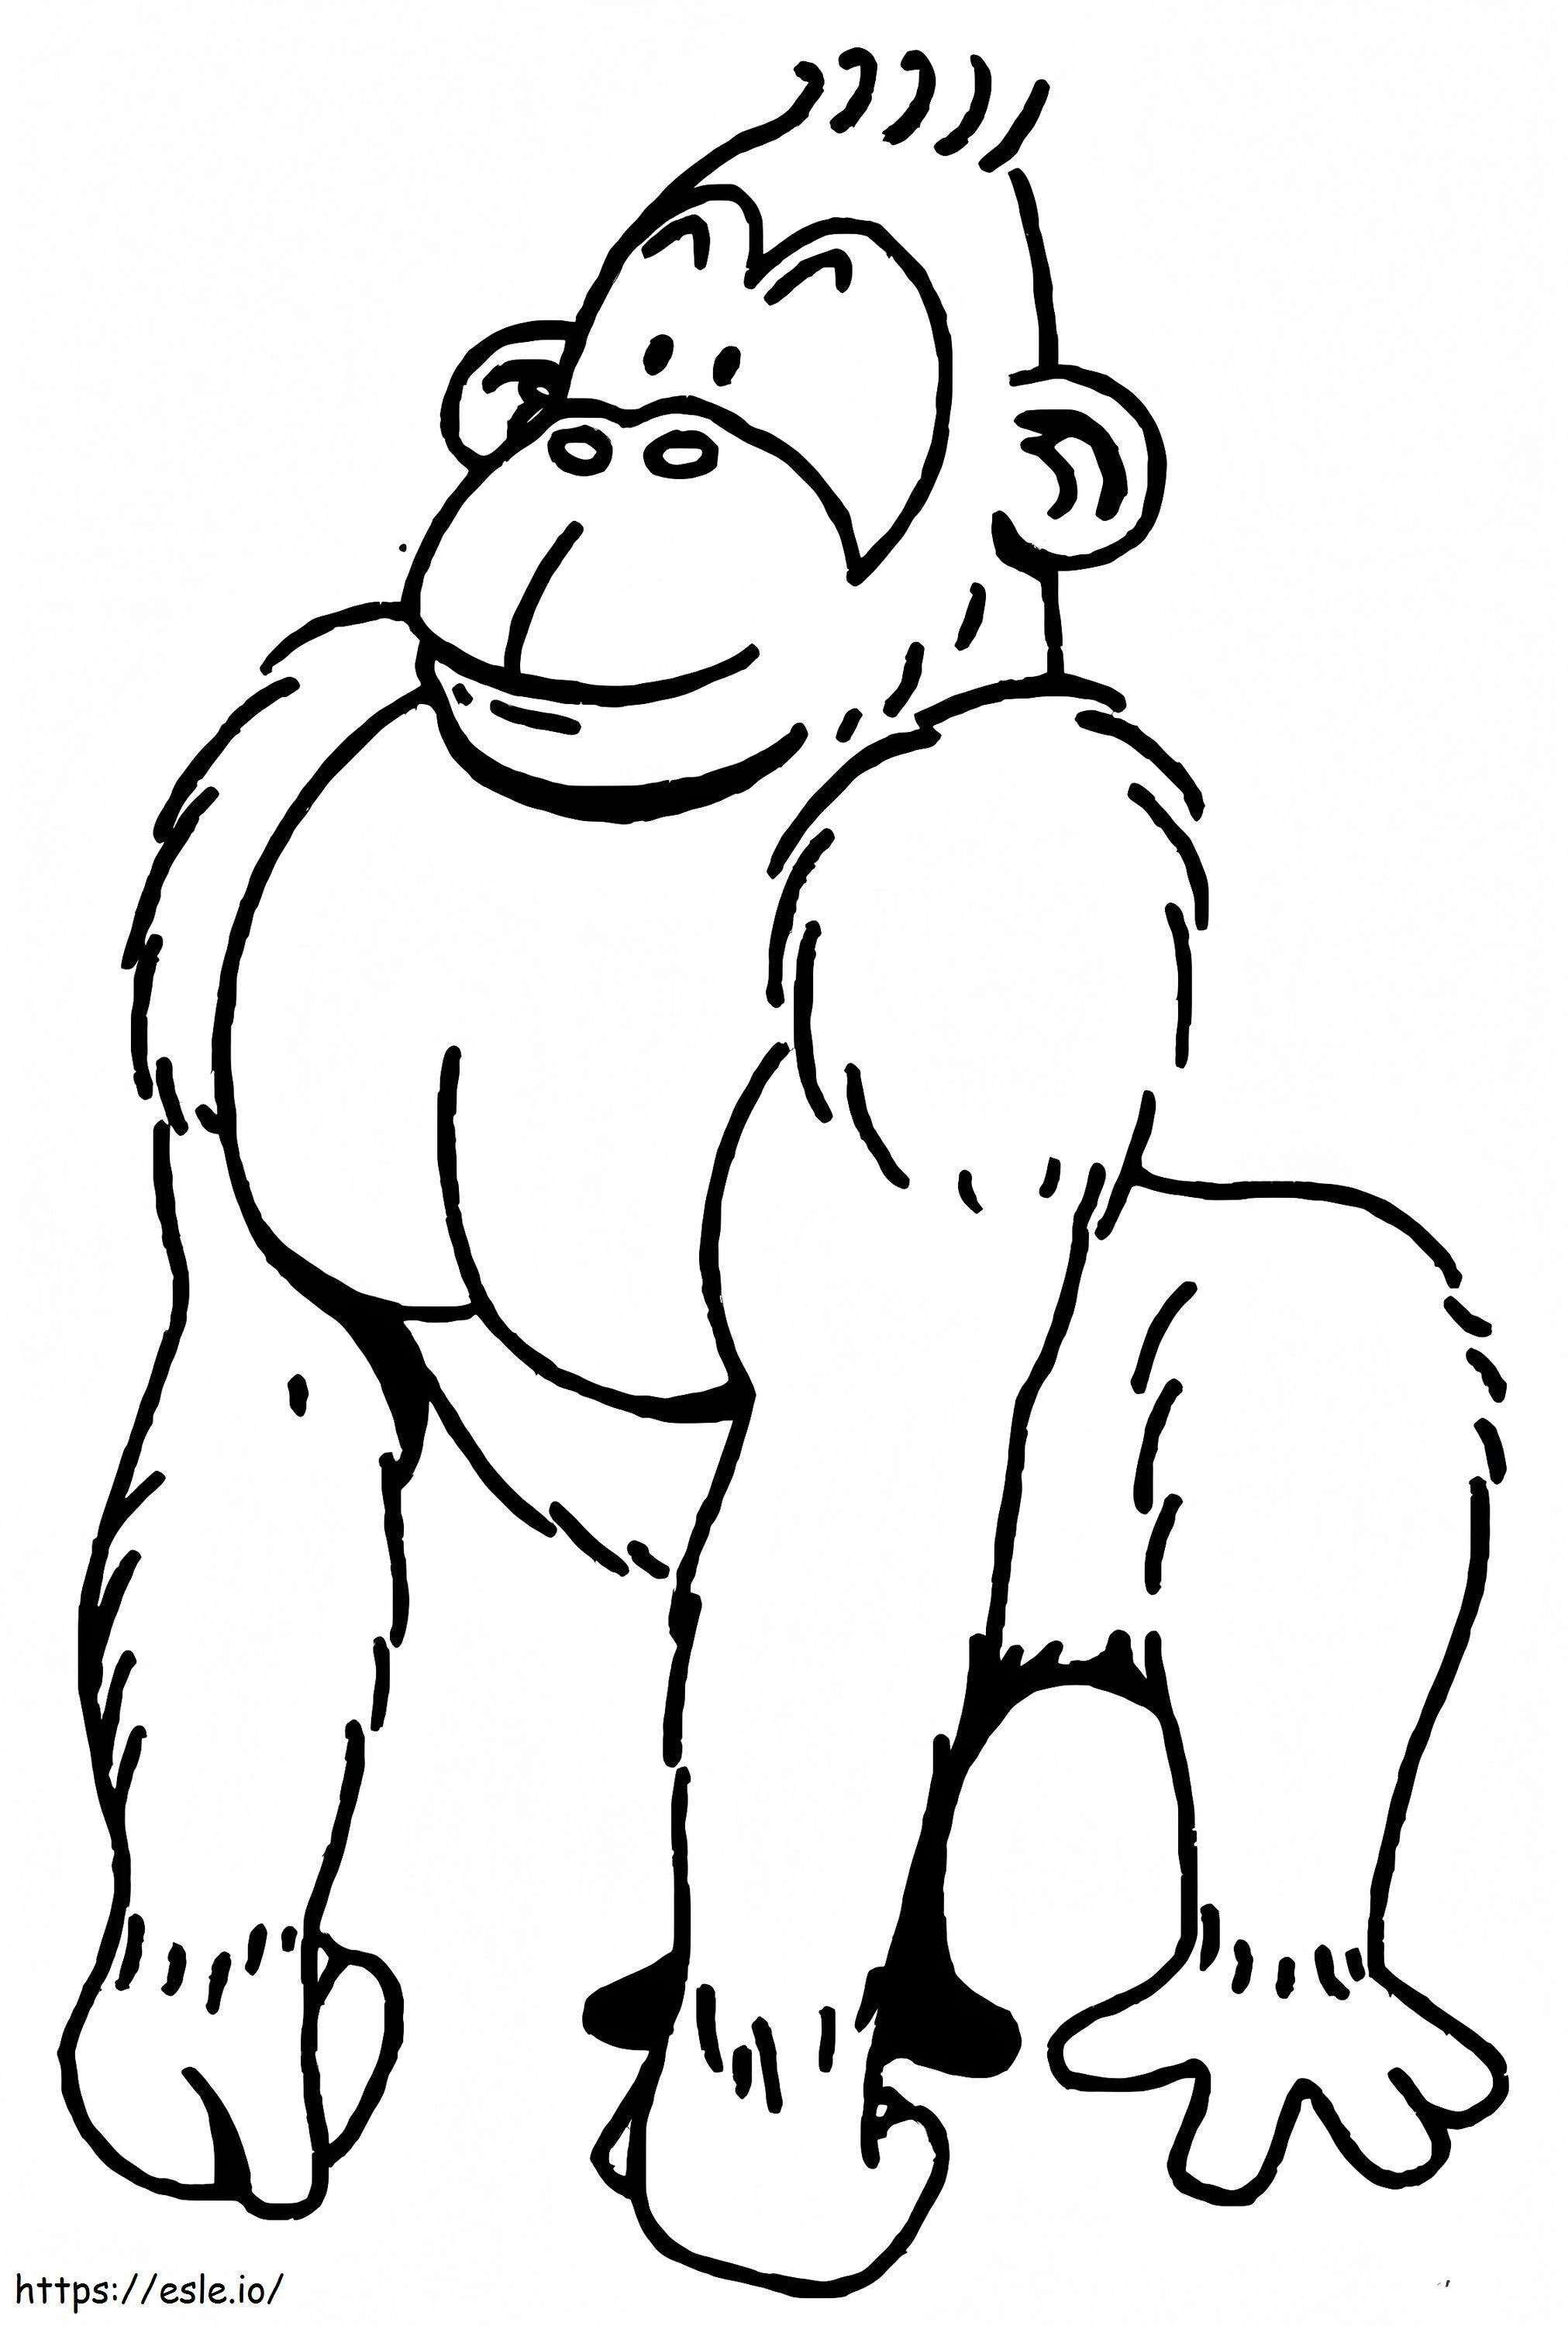 Einfacher Gorilla ausmalbilder